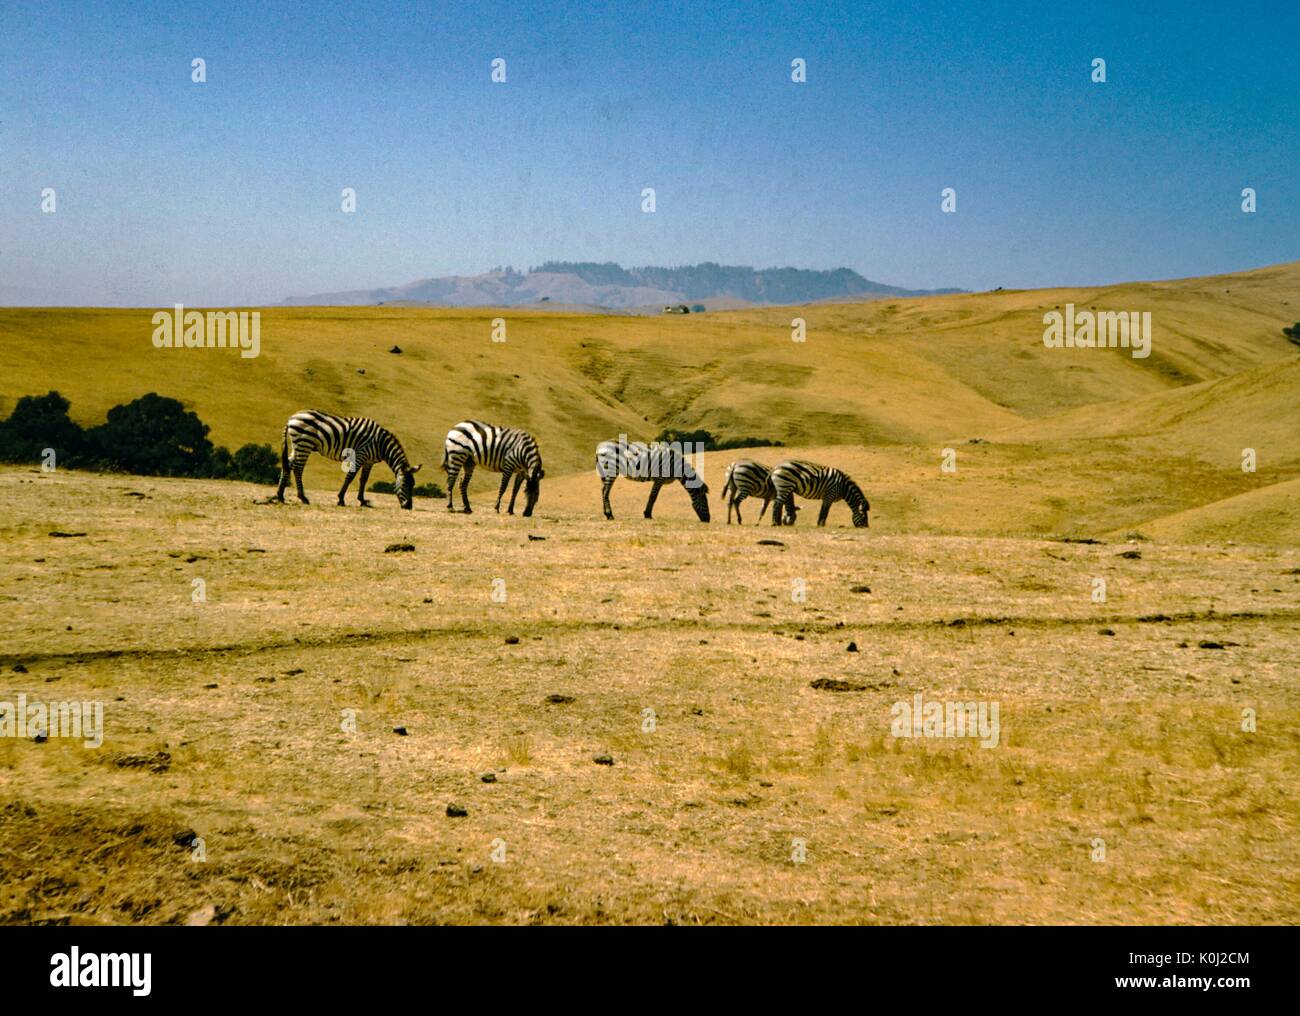 Un groupe de cinq zèbres broutent sur faible, de l'herbe sèche dans une prairie, 1960. Banque D'Images